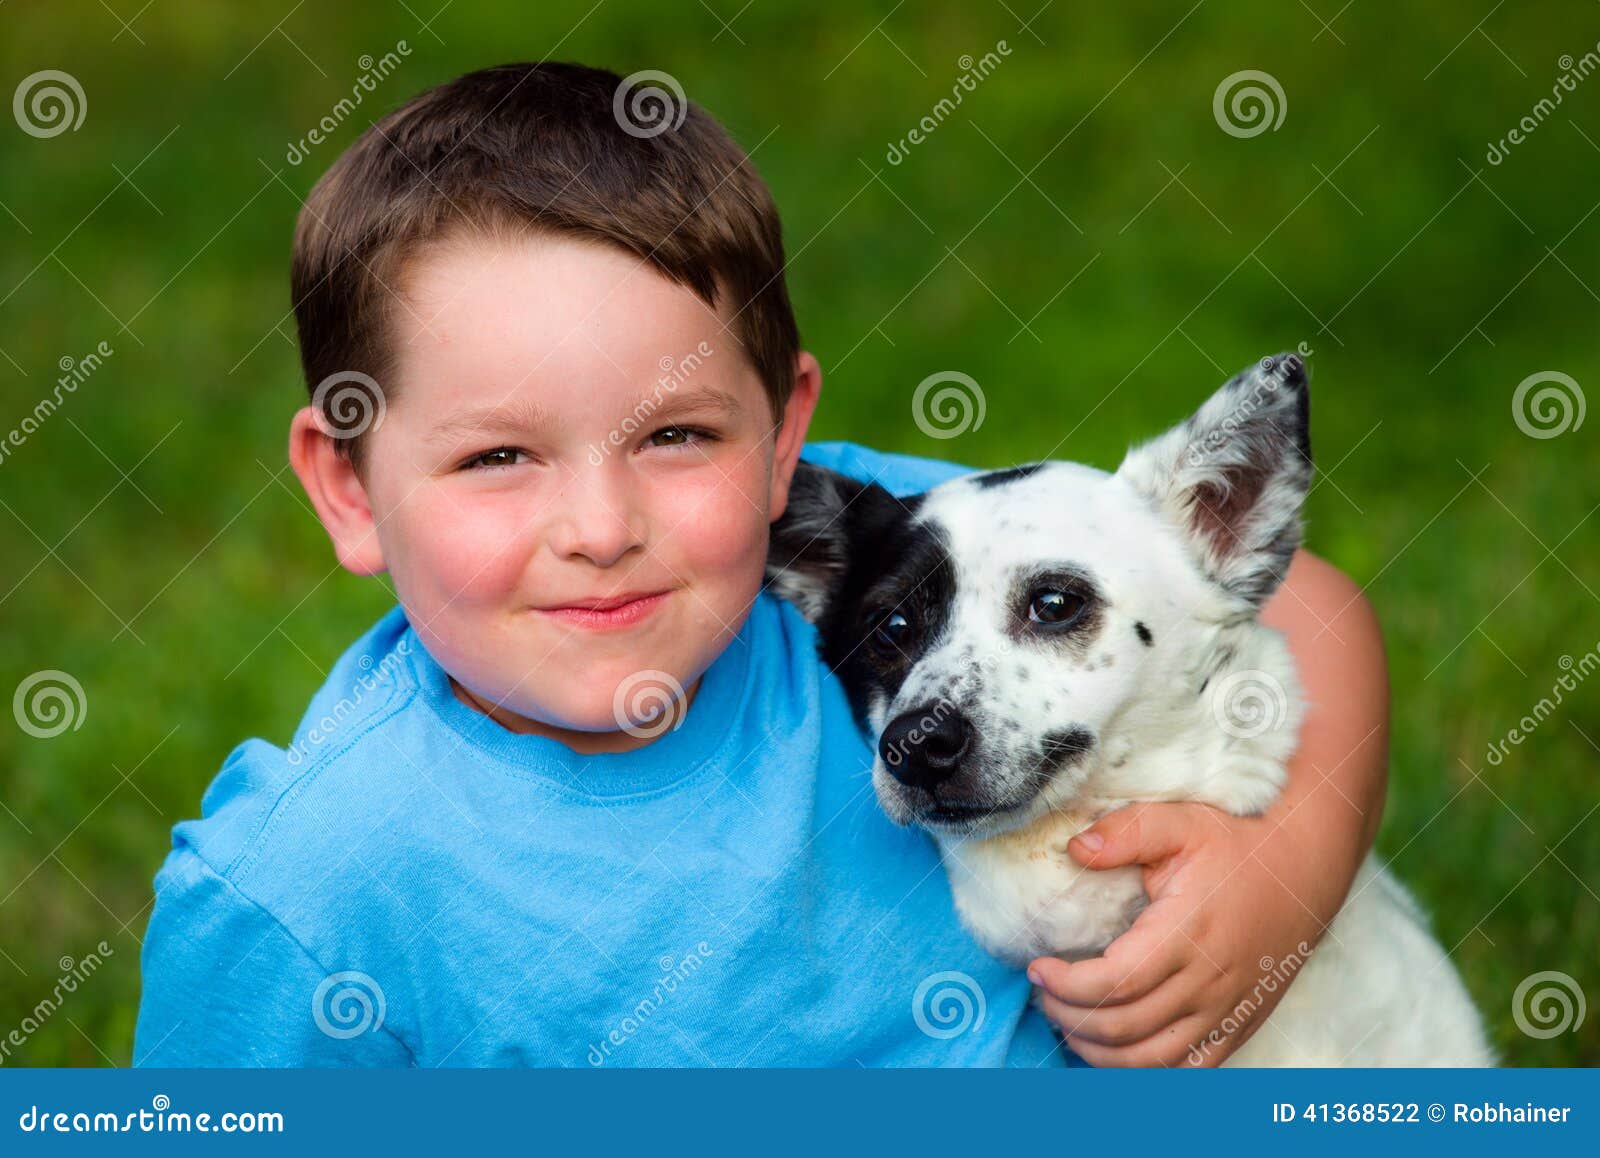 child lovingly embraces his pet